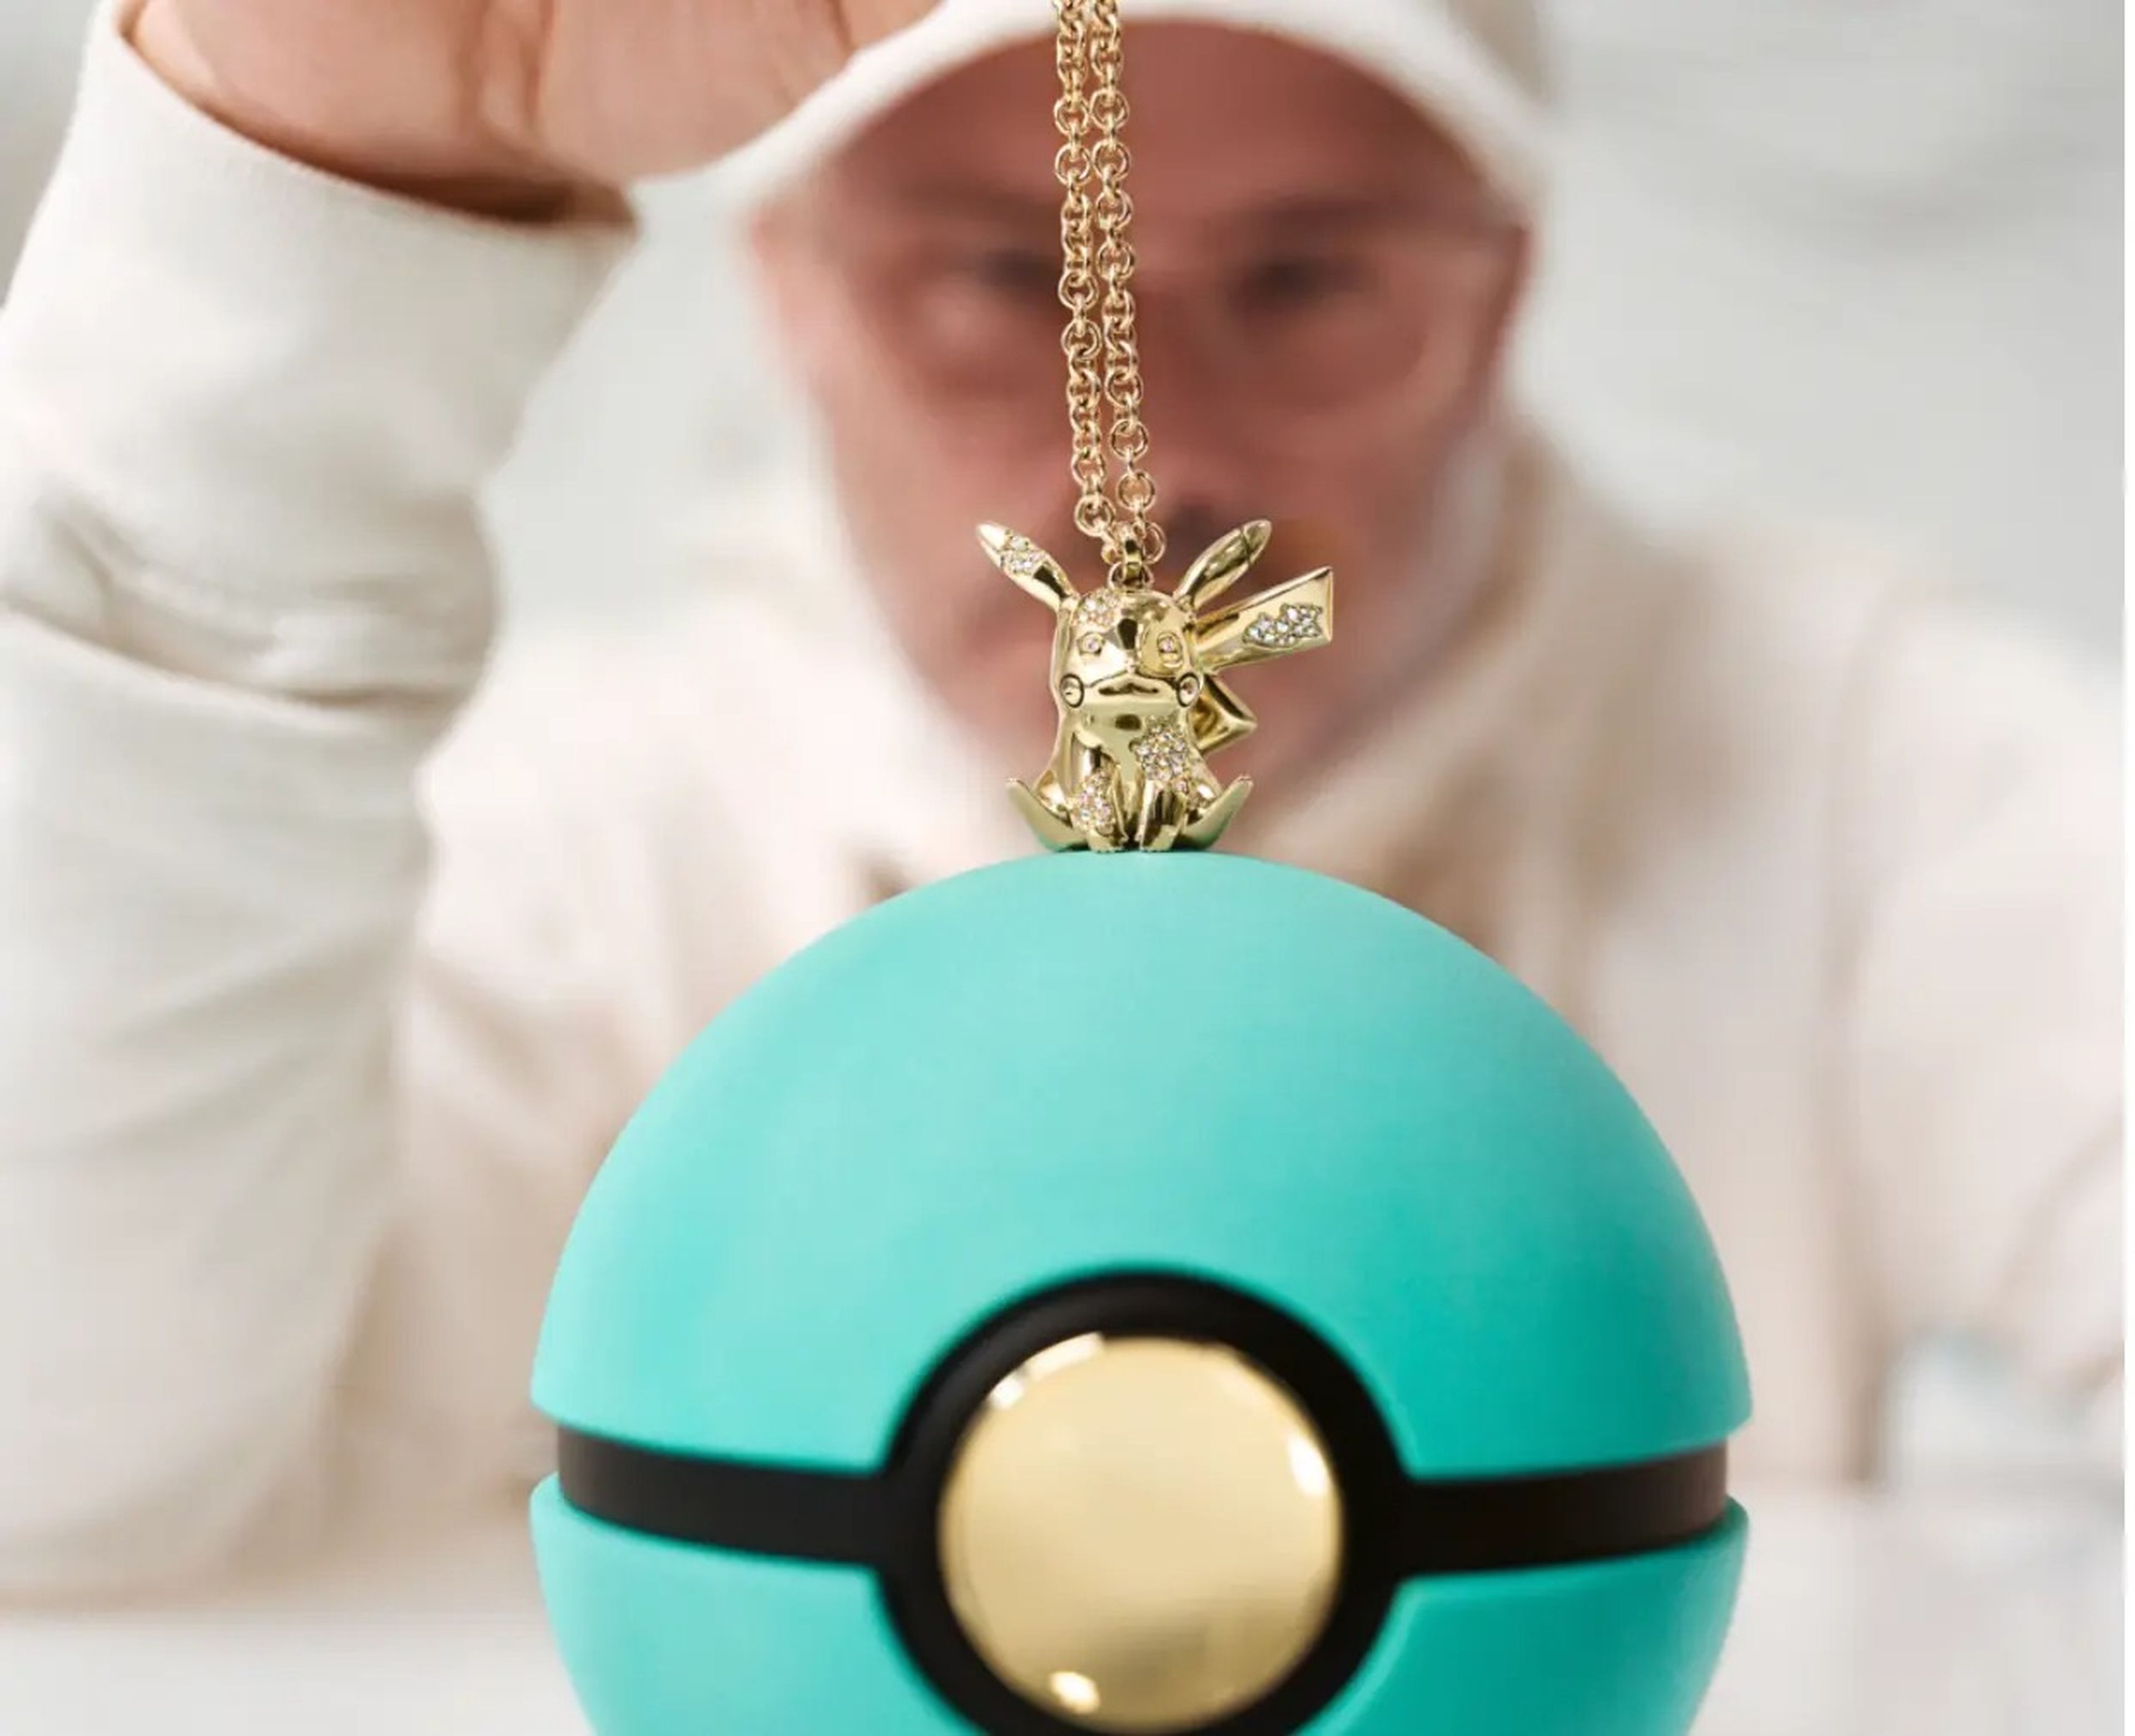 Daniel Arsham sujetando el nuevo colgante de Pikachu para la colección de Tiffany y Pokémon